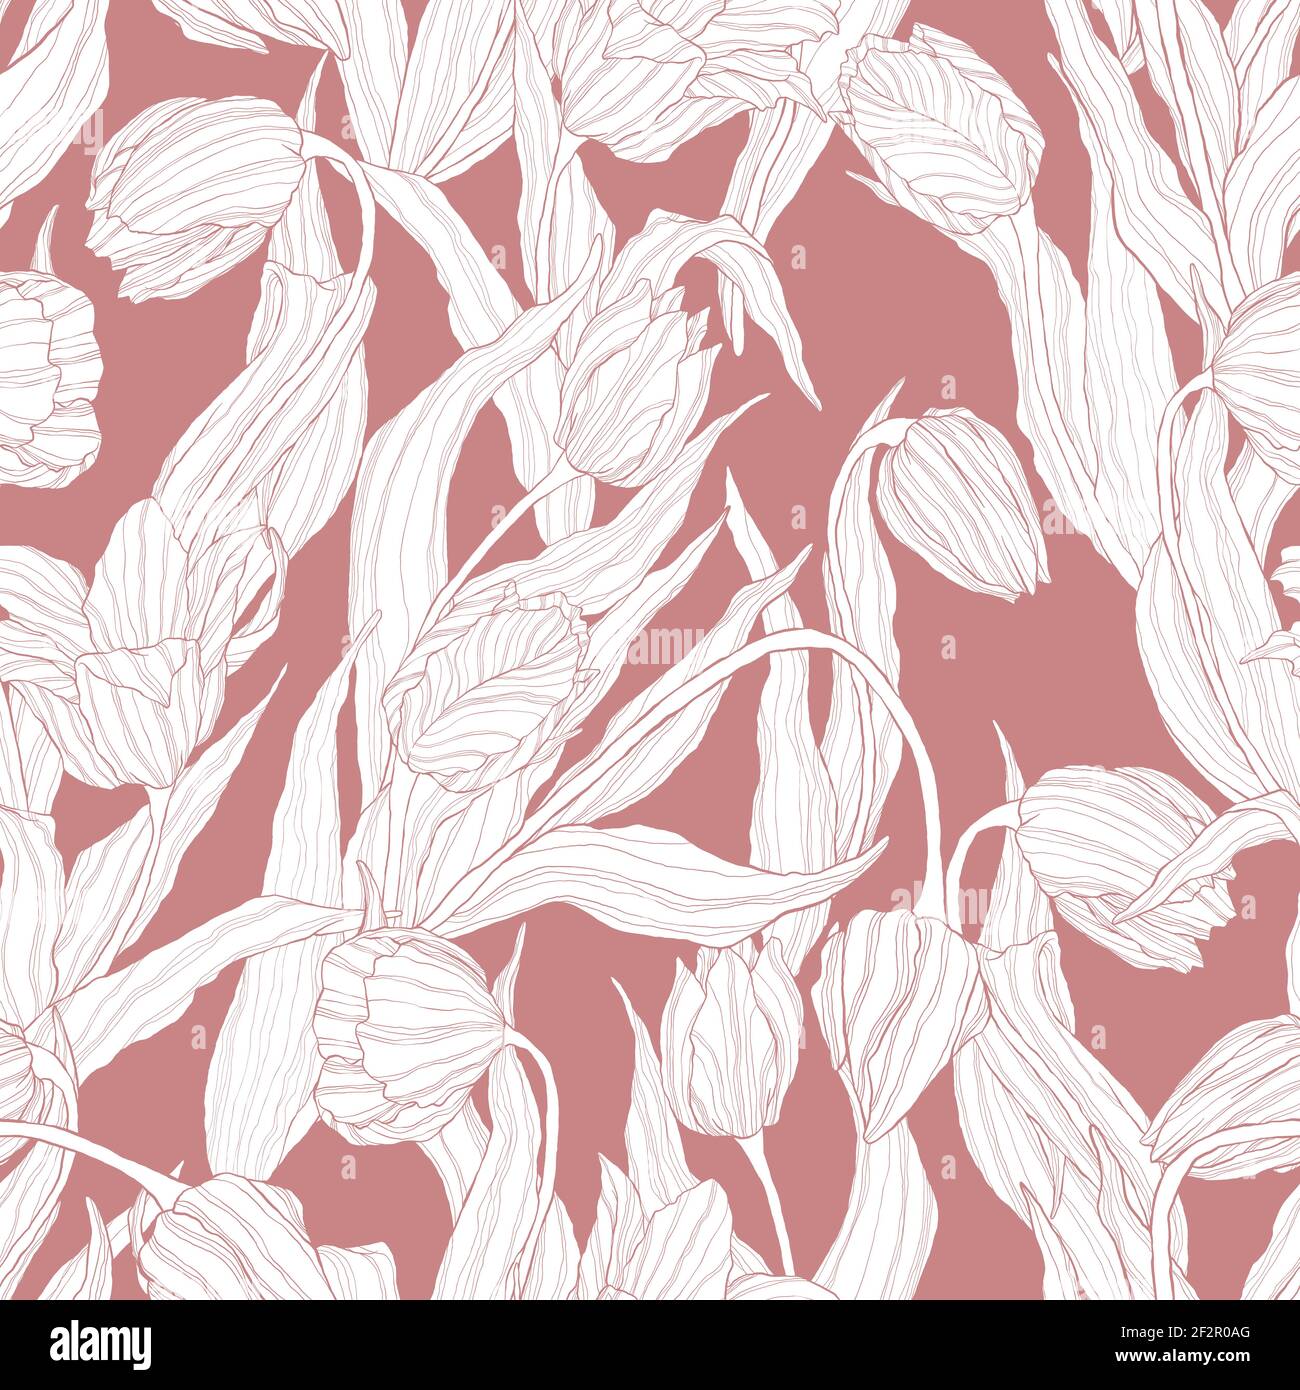 Nahtloses Blumenmuster mit Tulpenblüte. Vektor wiederholenden Hintergrund mit Linie Kunst Frühling Blume Muster. Am besten für Verpackung, Textil oder Druck desig Stock Vektor